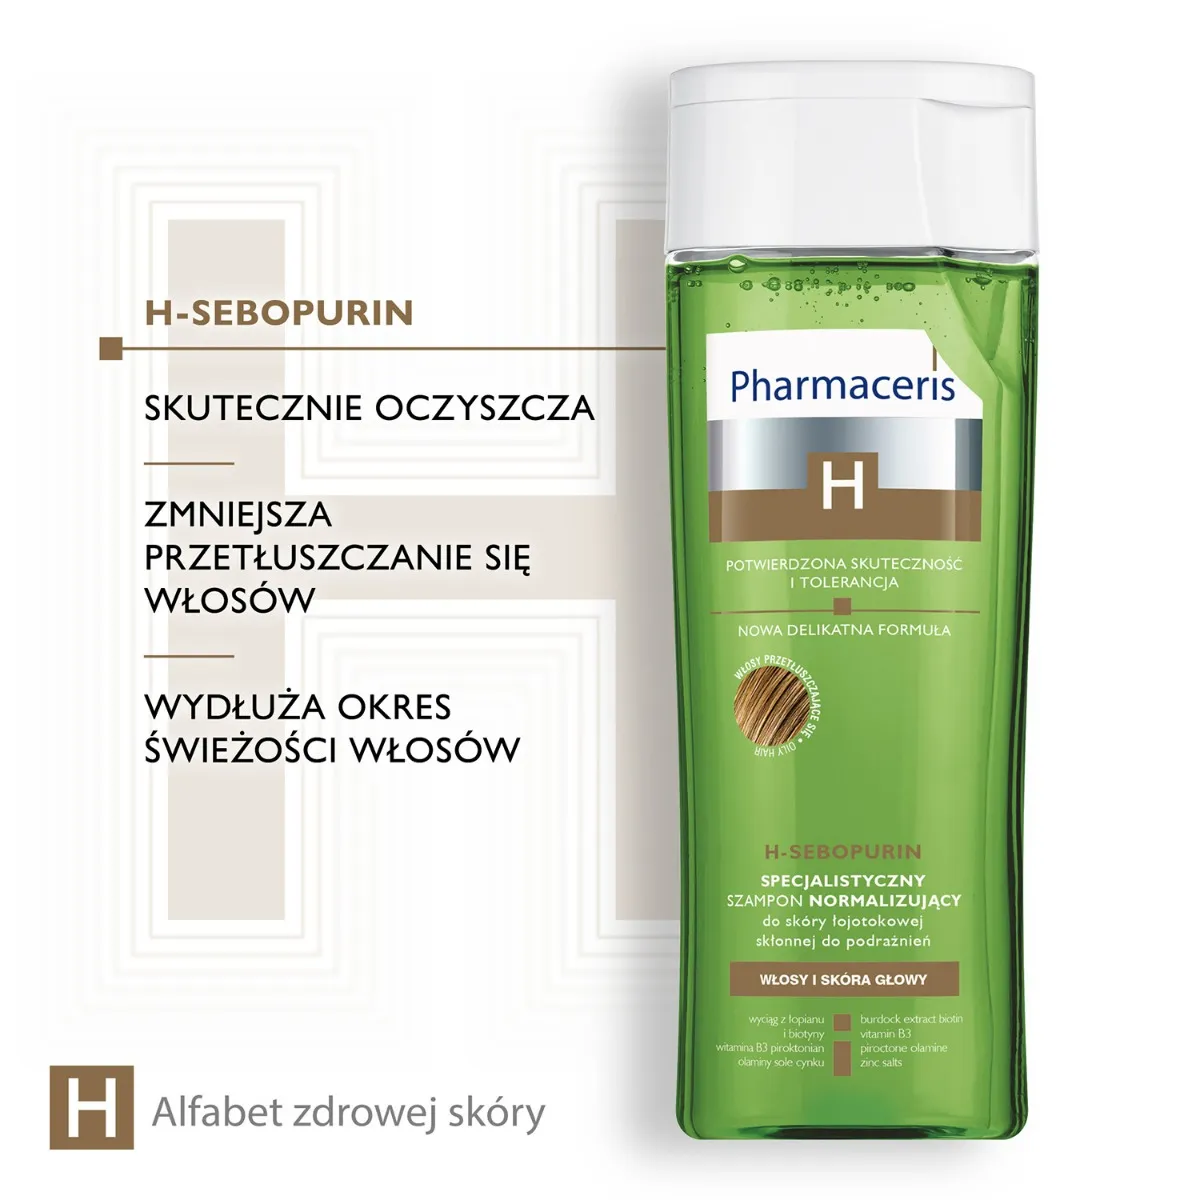 Pharmaceris H Sebopurin, specjalistyczny szampon normalizujący do skóry łojotokowej, 250 ml 